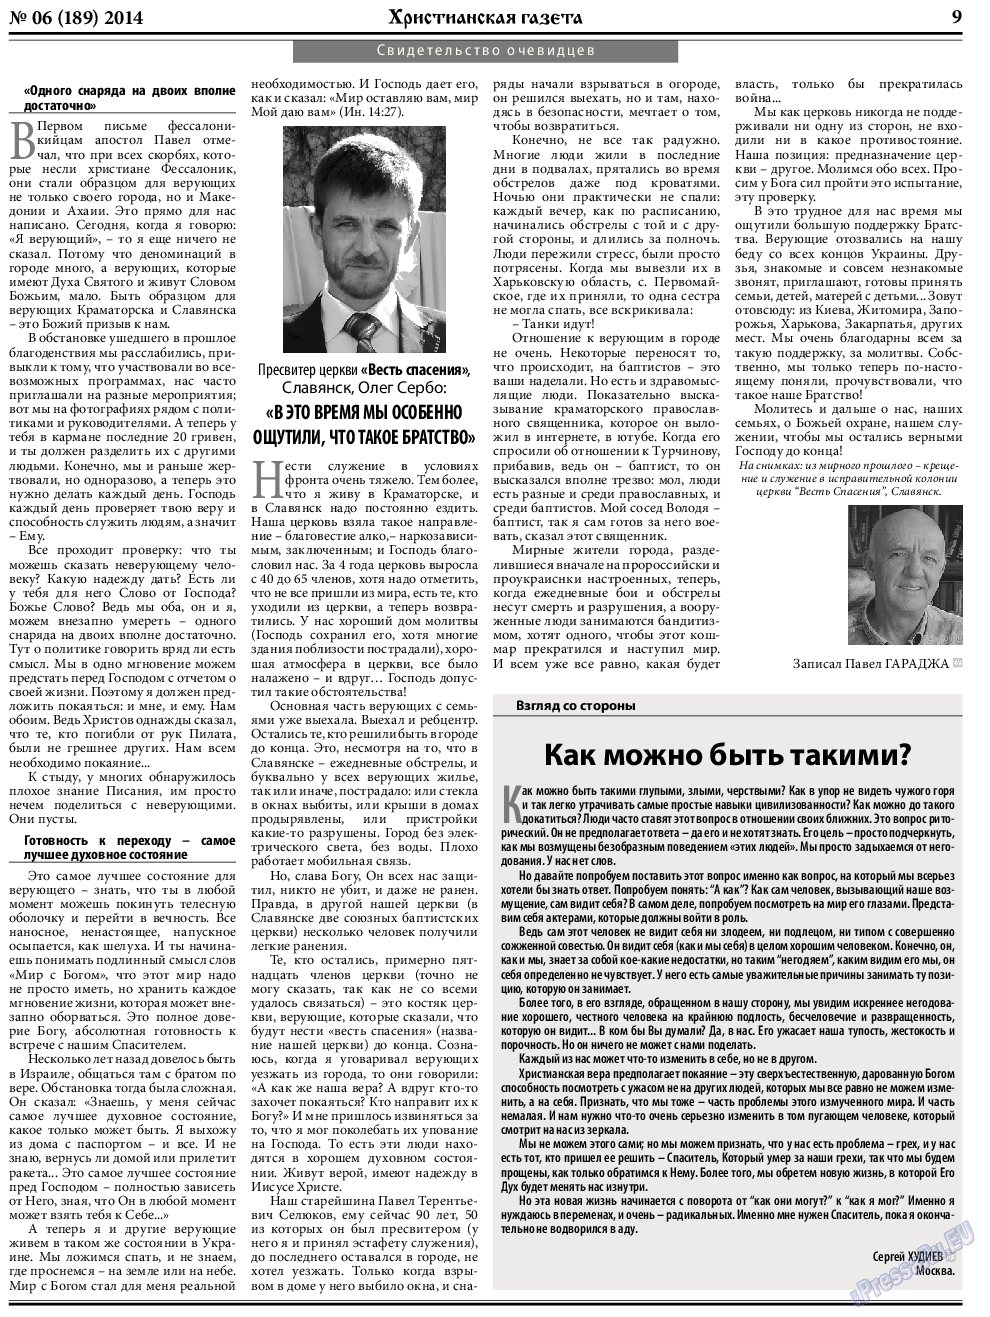 Христианская газета, газета. 2014 №6 стр.9